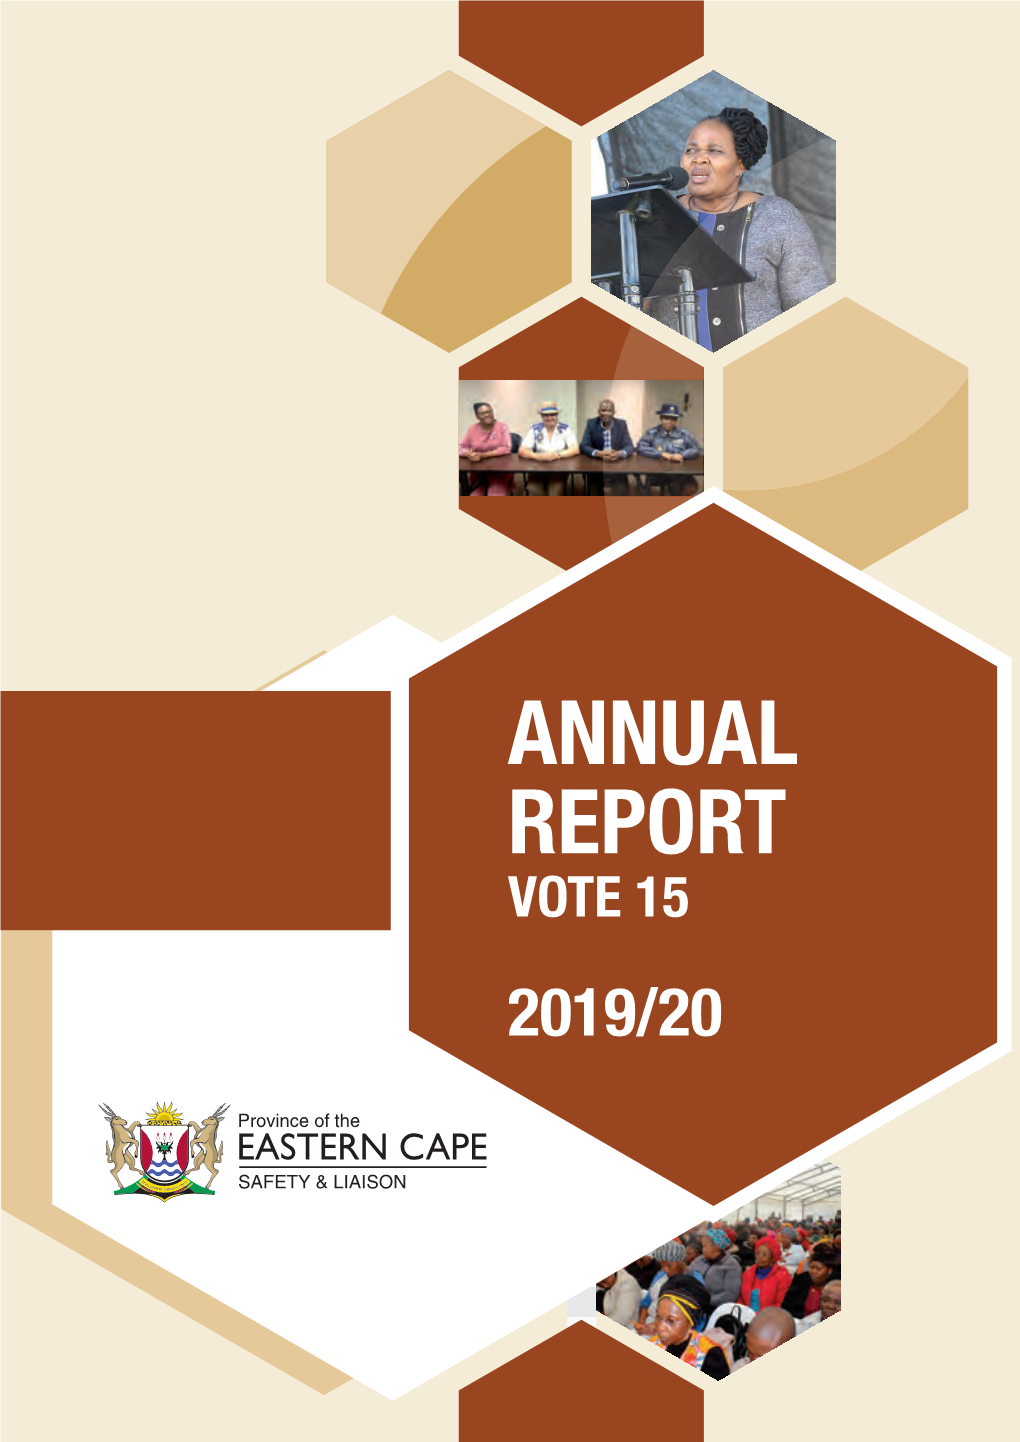 Annual Report Vote 15 2019 / 20